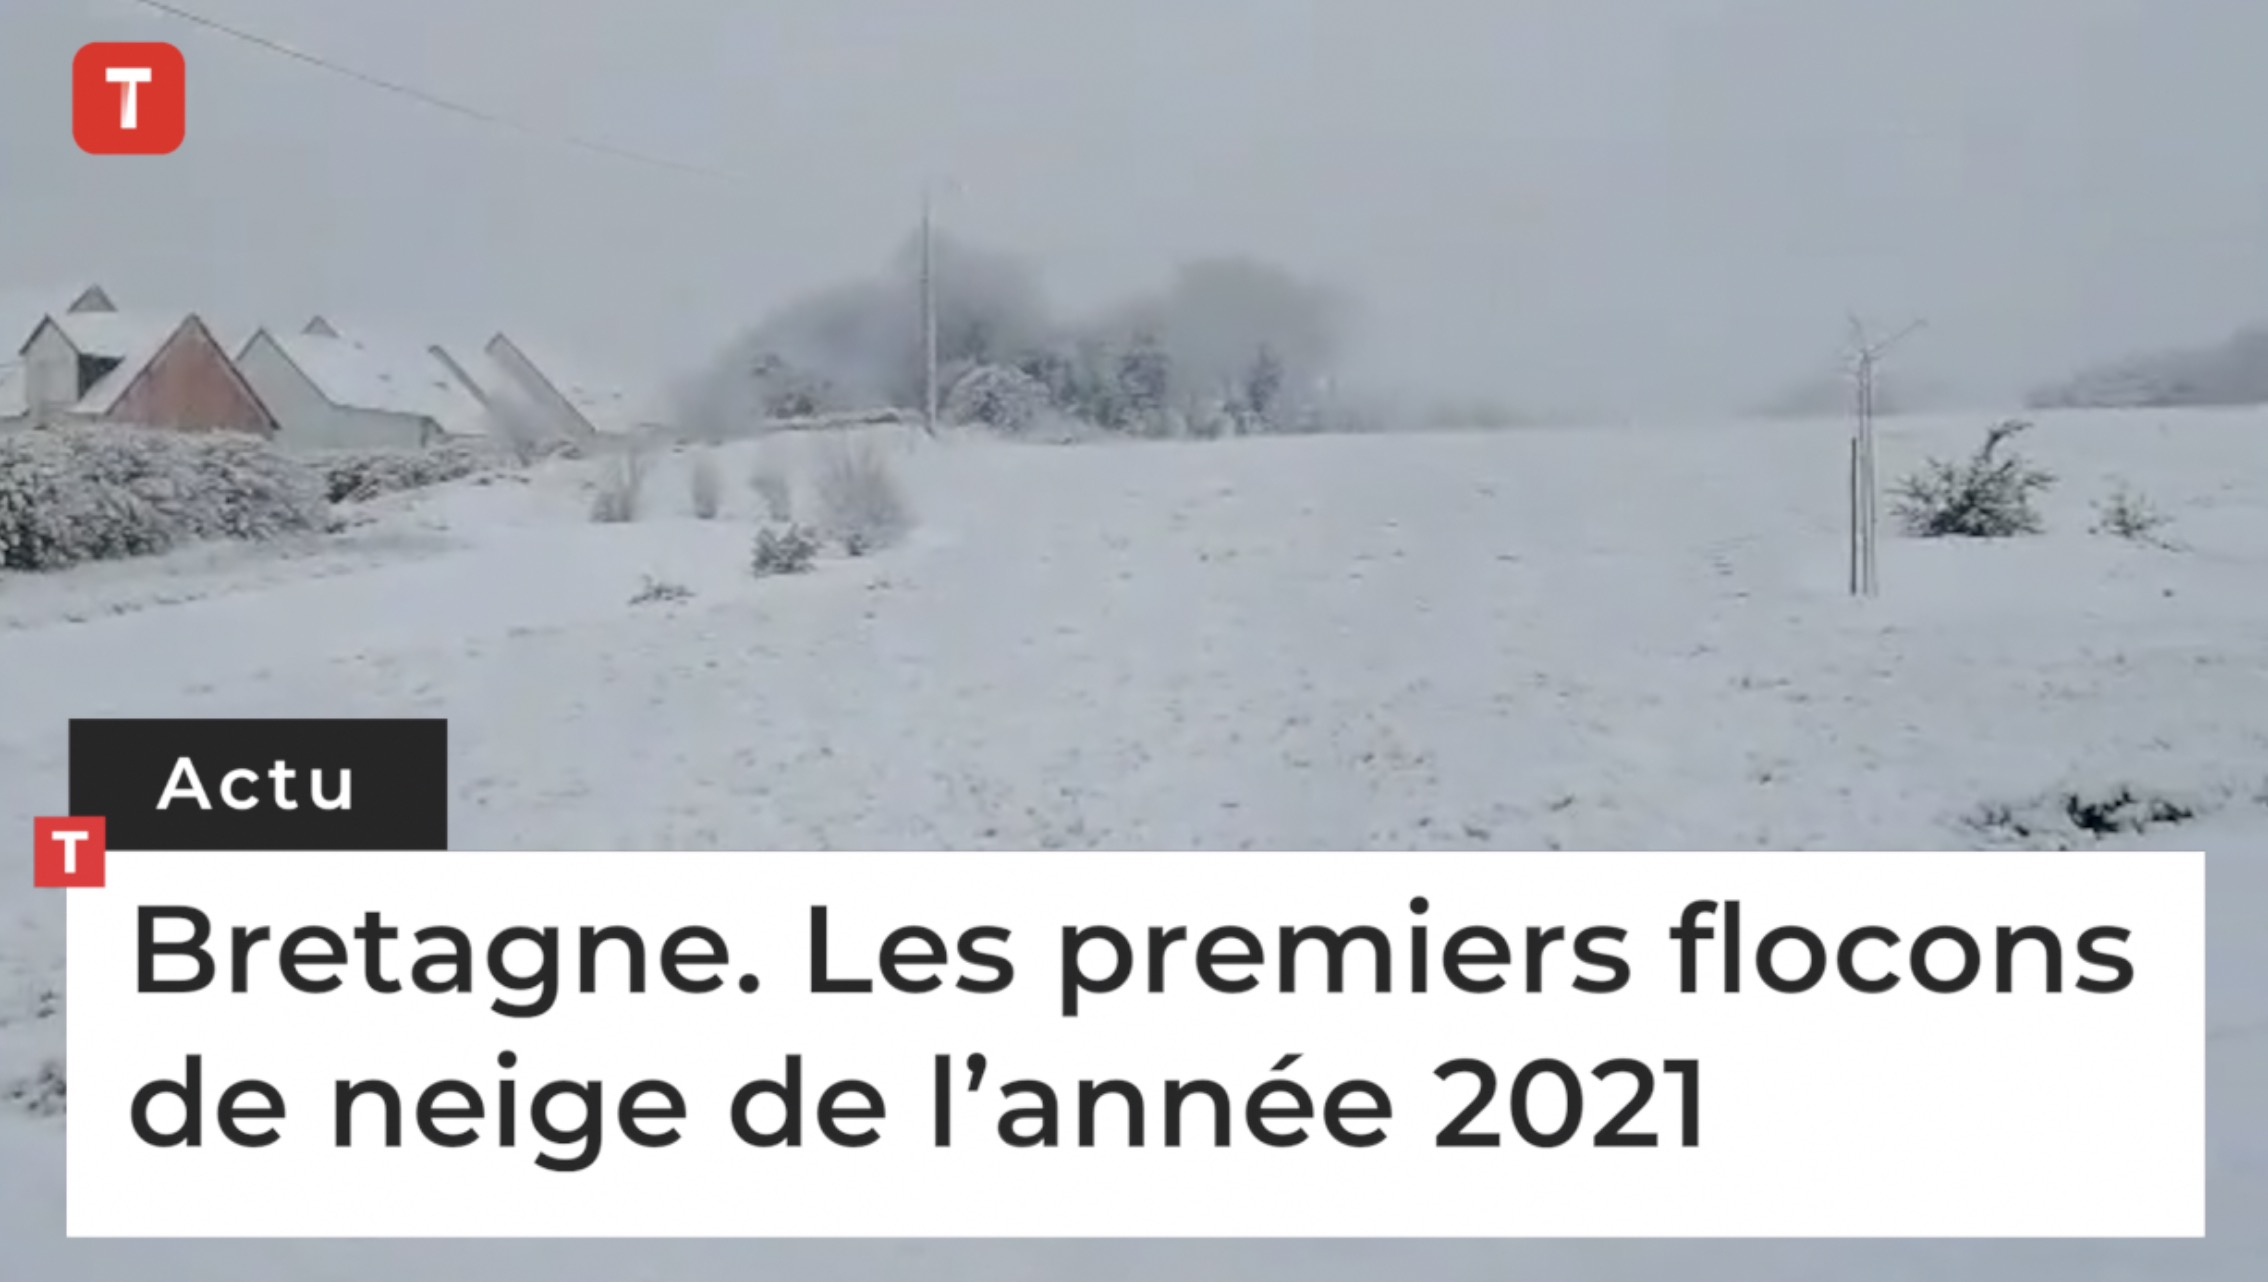 Bretagne. Les premiers flocons de neige de l’année 2021 (Le Télégramme)